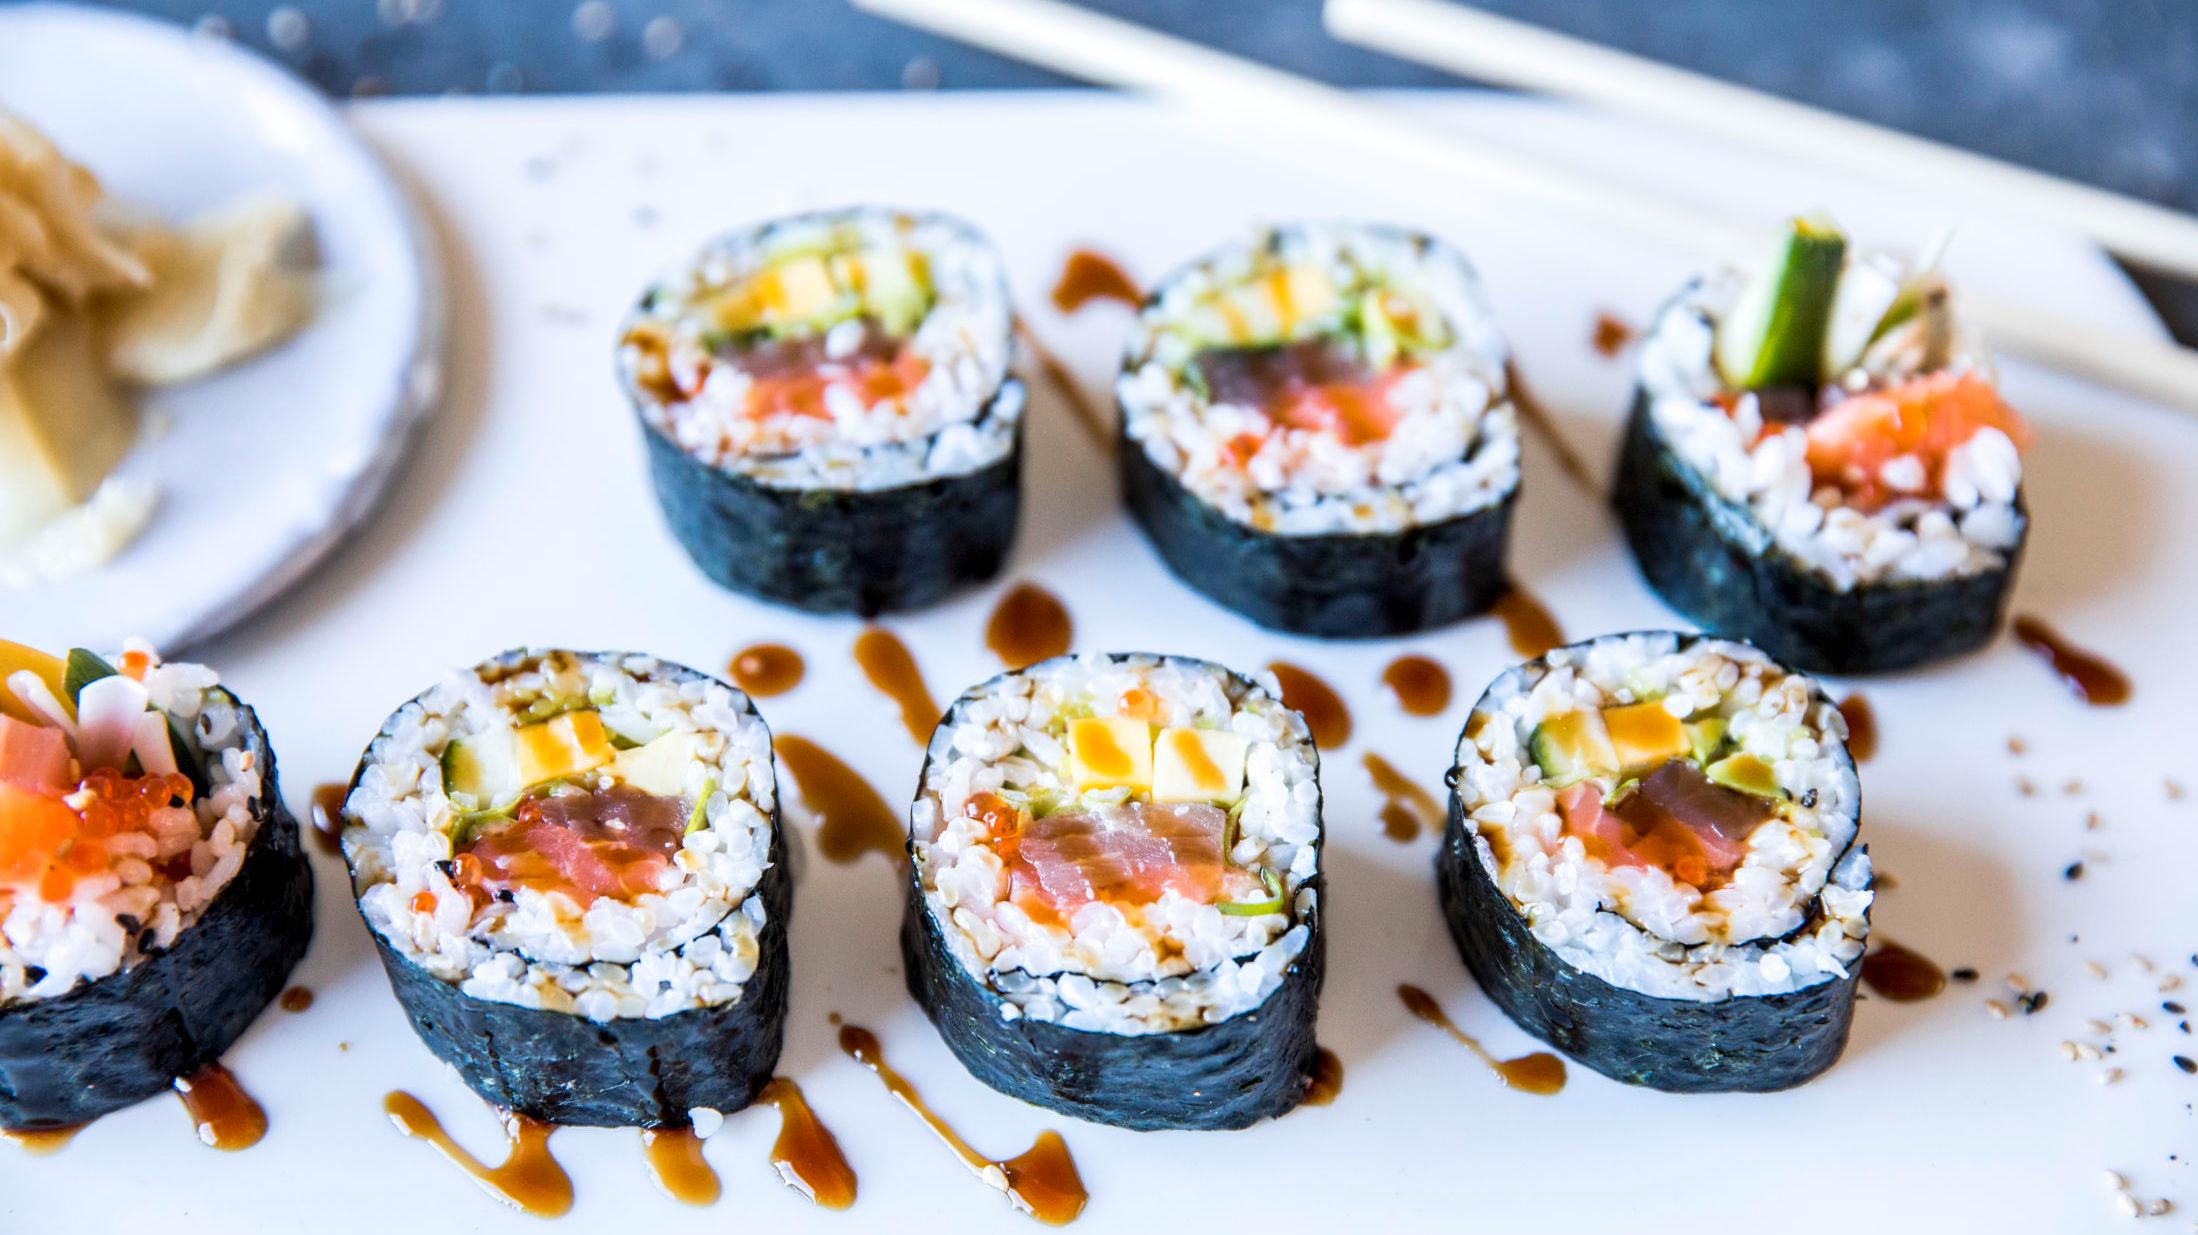 MANGE MULIGHETER: Sushi kommer i en rekke former og smaker. Og det er veldig enkelt å lage selv, så lenge du kan forholdsreglene. Foto: Sara Johannessen/VG